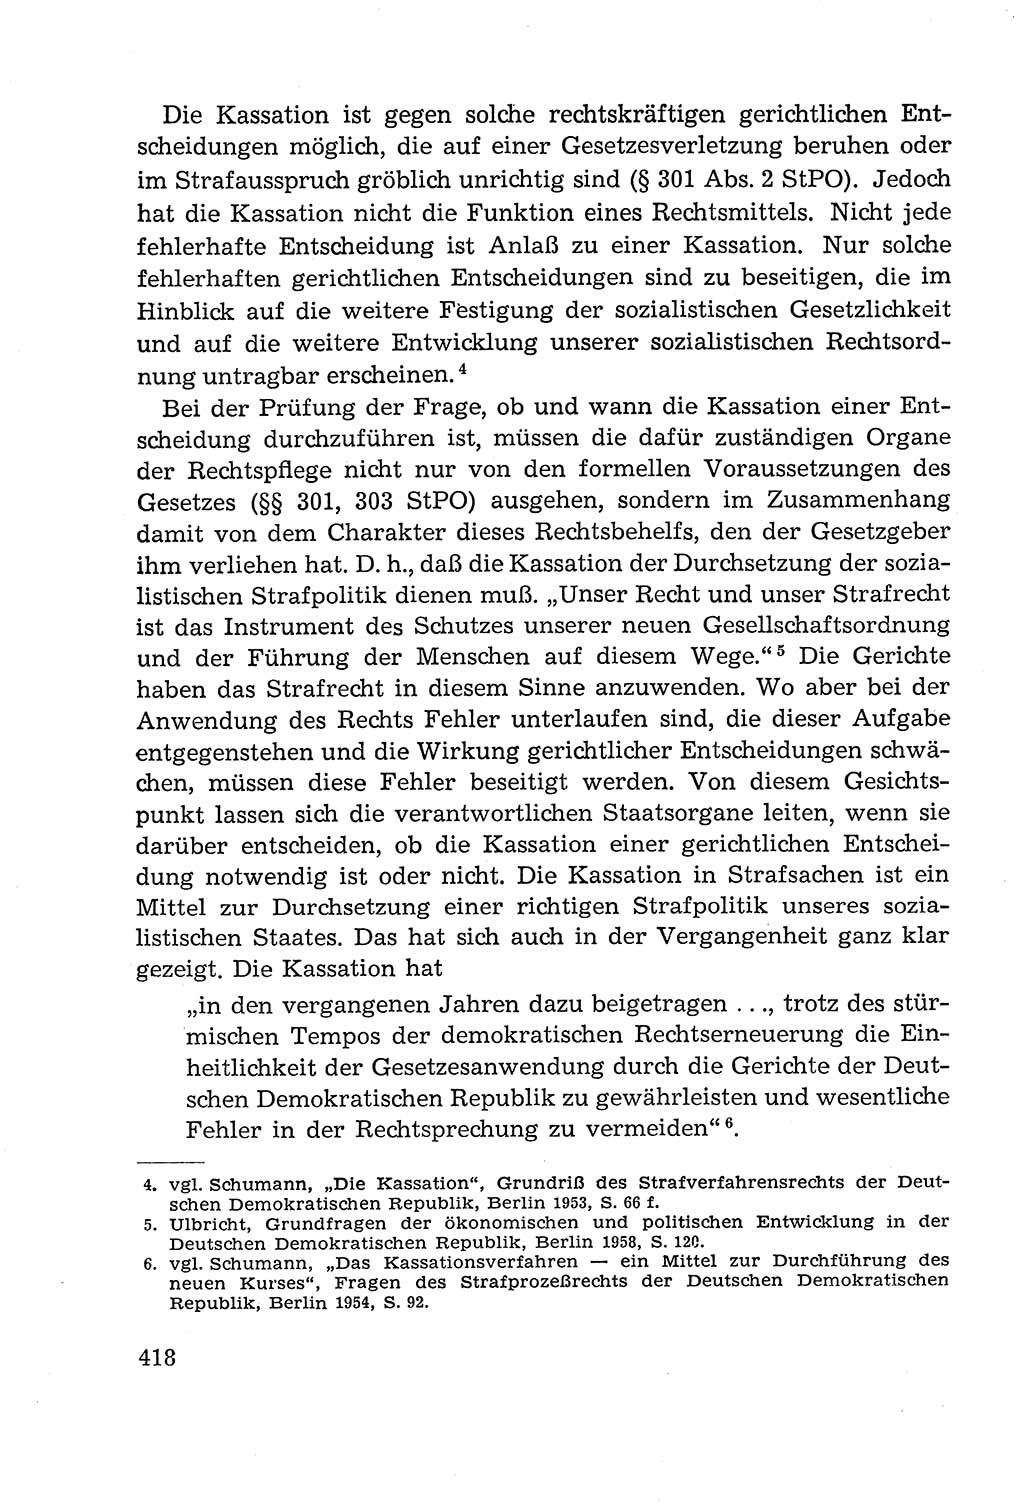 Leitfaden des Strafprozeßrechts der Deutschen Demokratischen Republik (DDR) 1959, Seite 418 (LF StPR DDR 1959, S. 418)